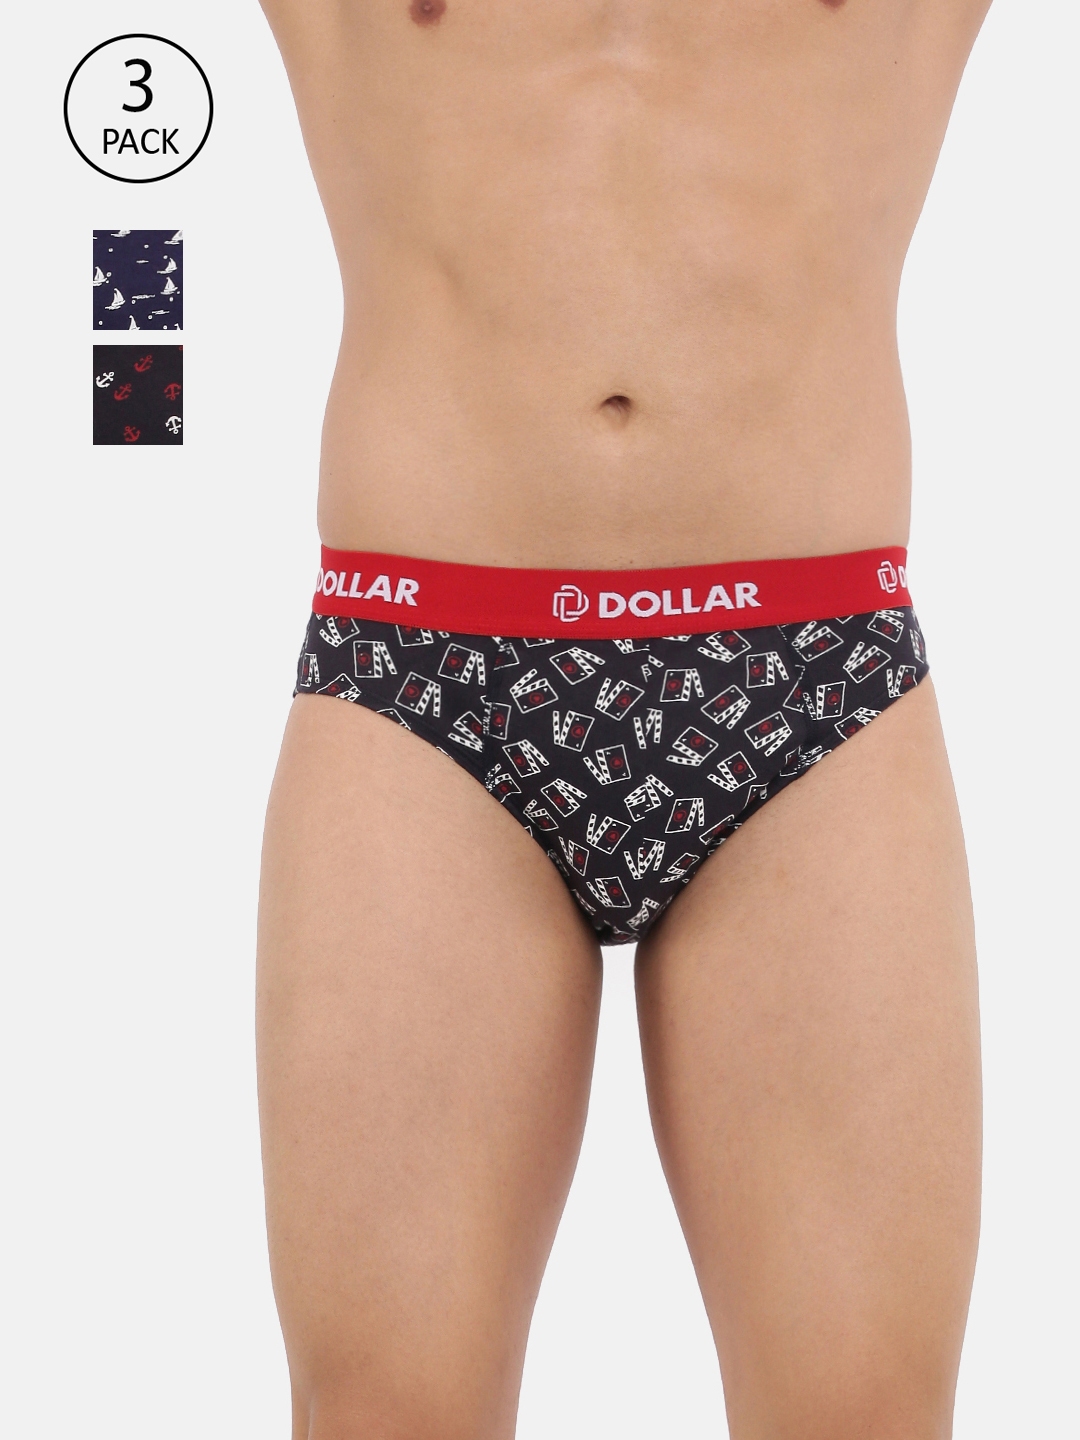 Buy Dollar Bigboss Assorted Trunks - Pack of 3 for Men's Online